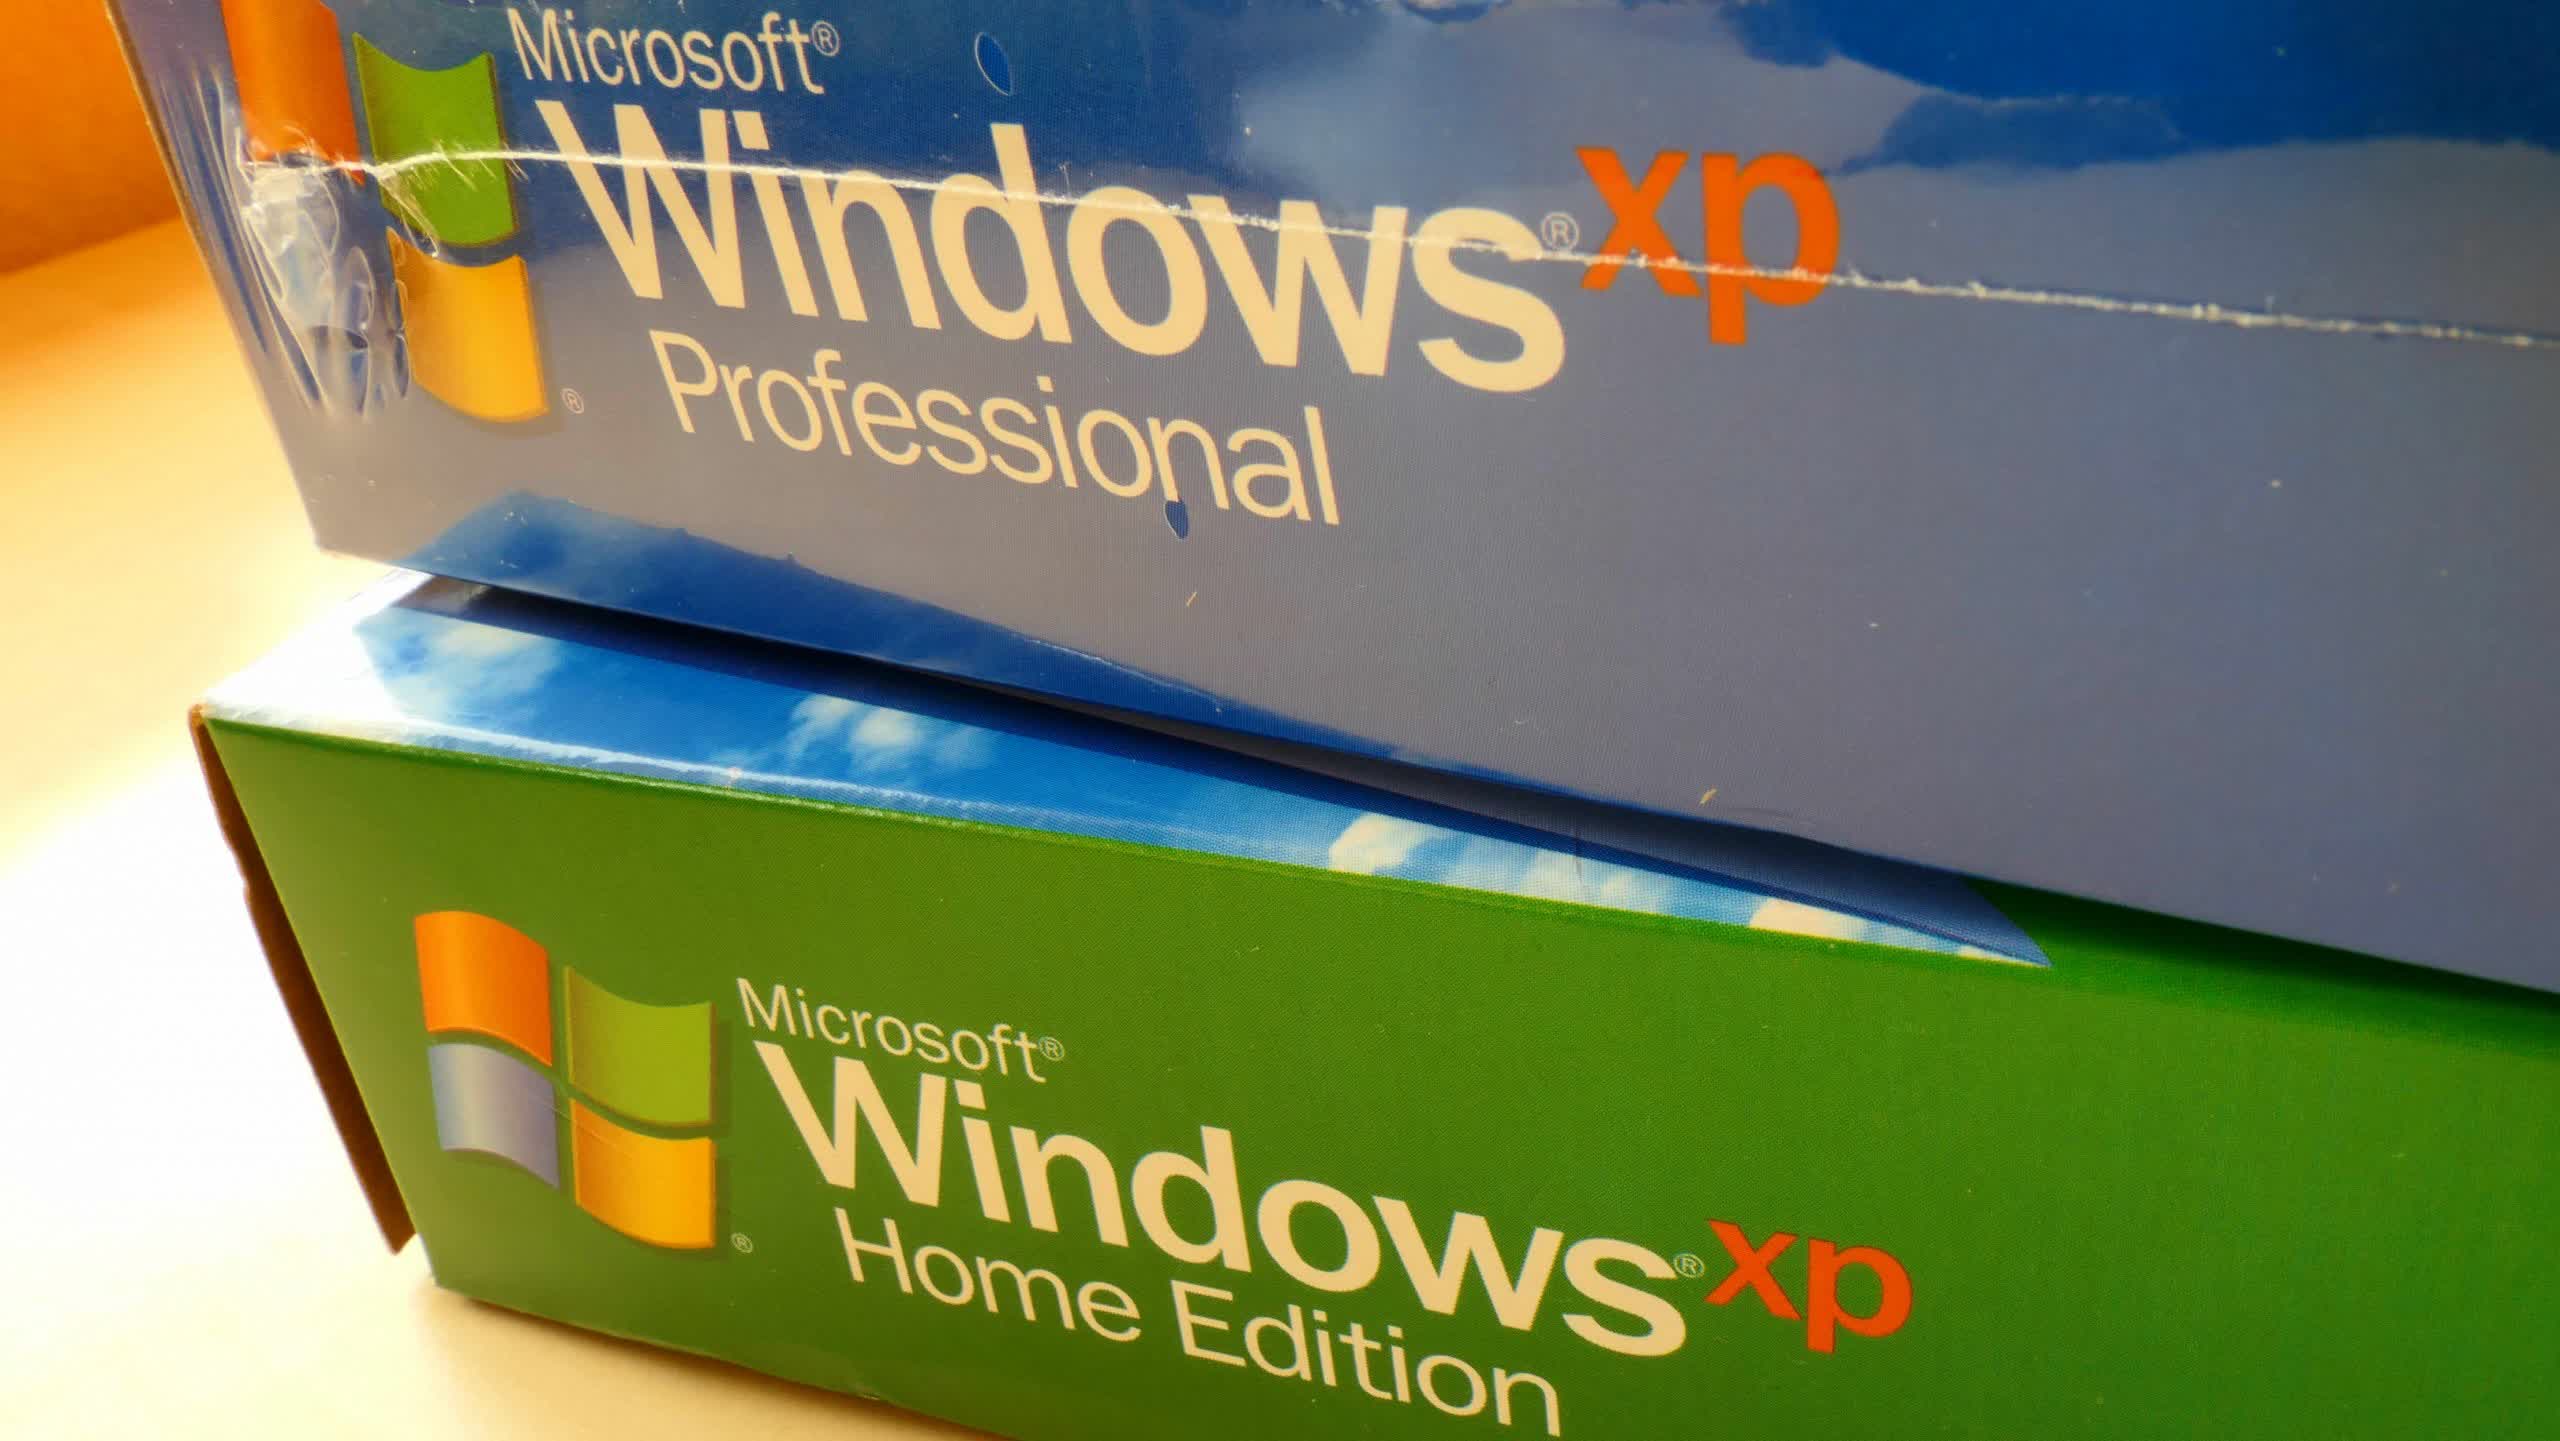 Nostalgia peligrosa: poner Windows XP en línea provocará que los virus se instalen automáticamente en cuestión de minutos